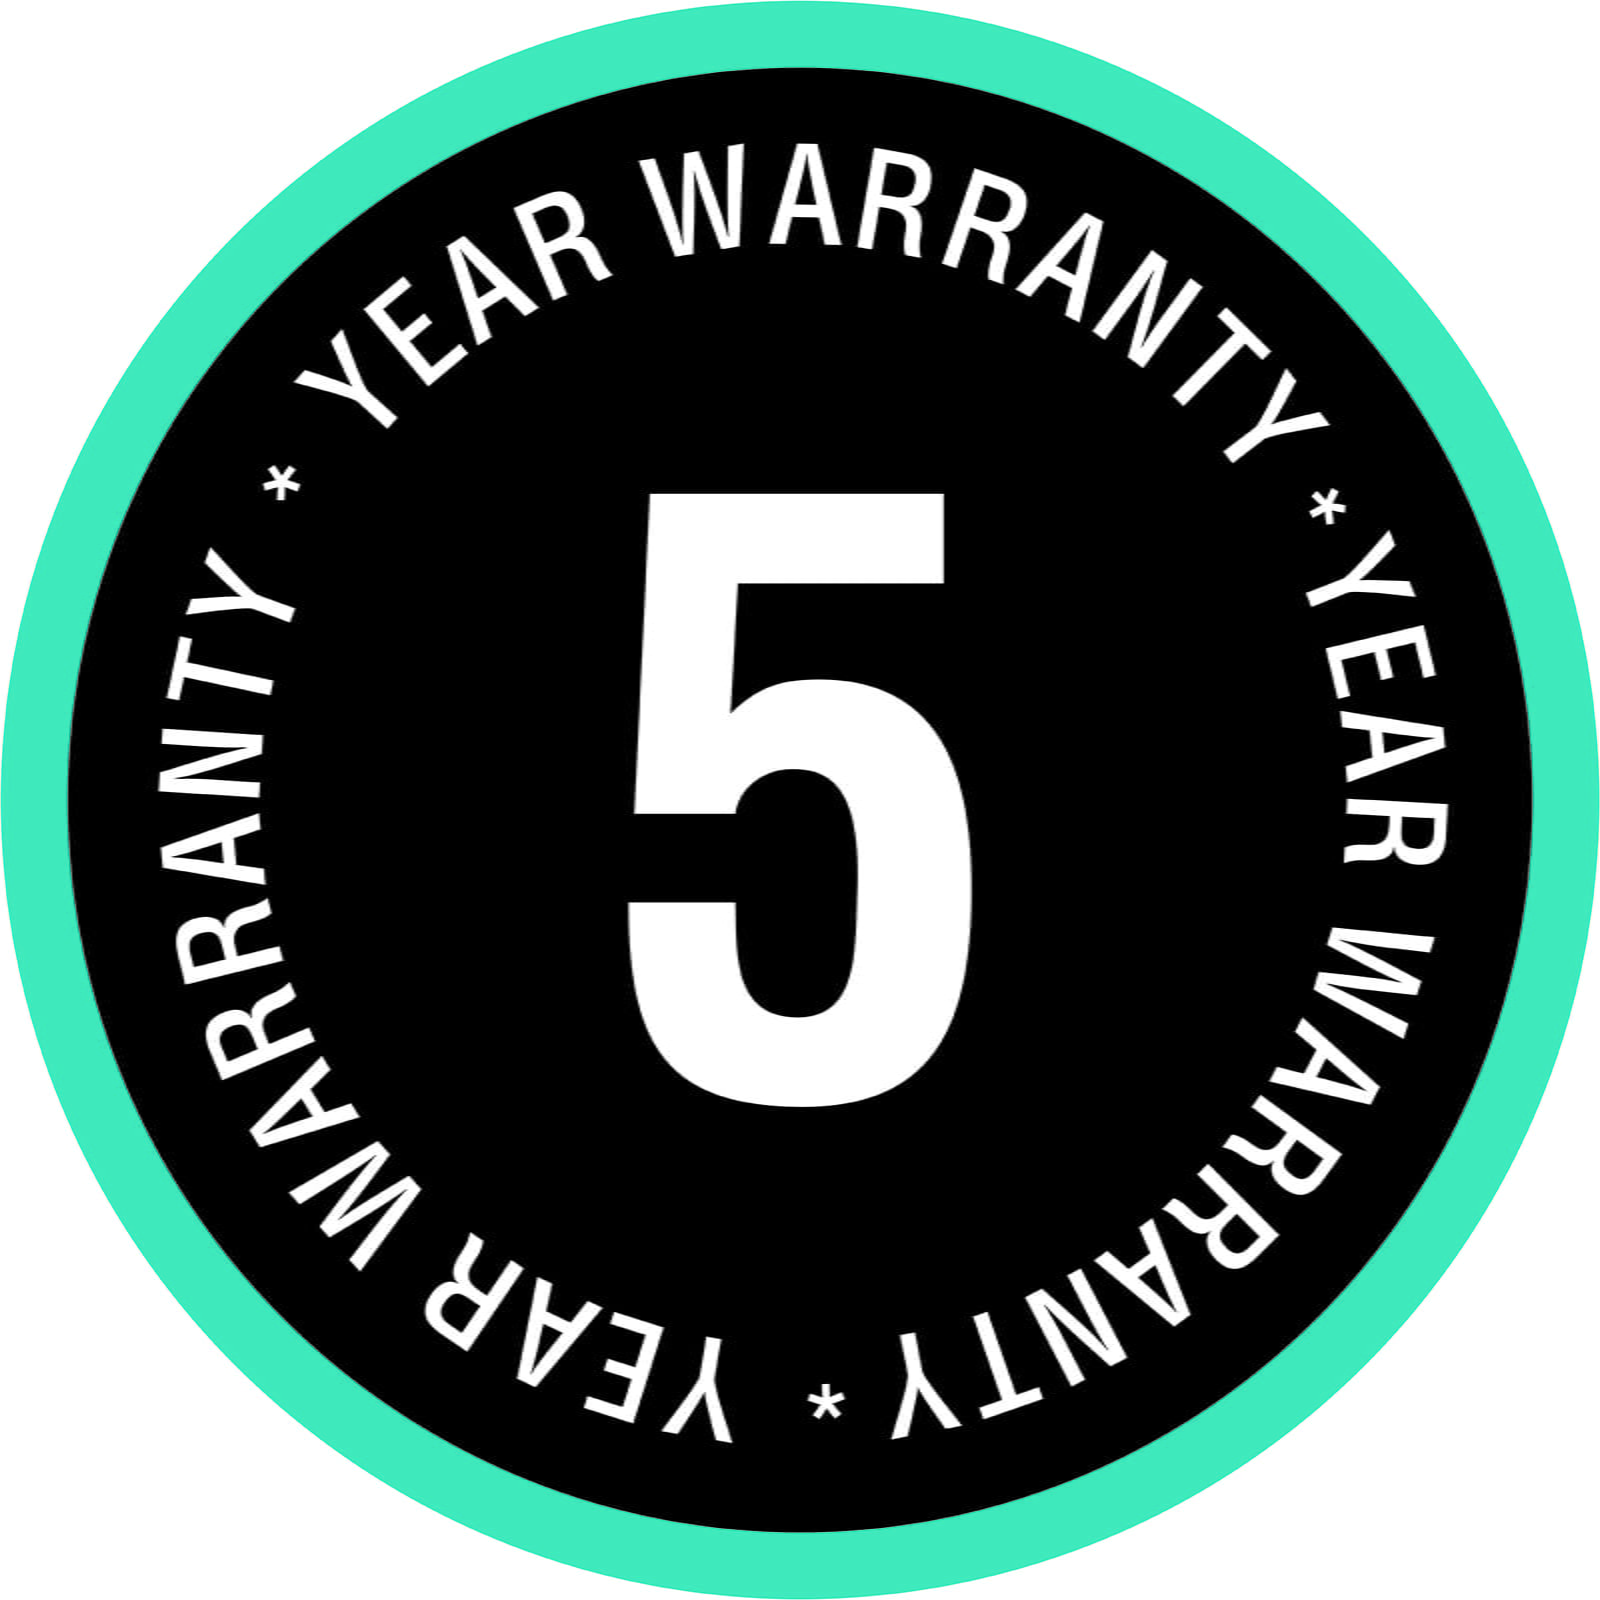 GARDENA 5 year warranty icon